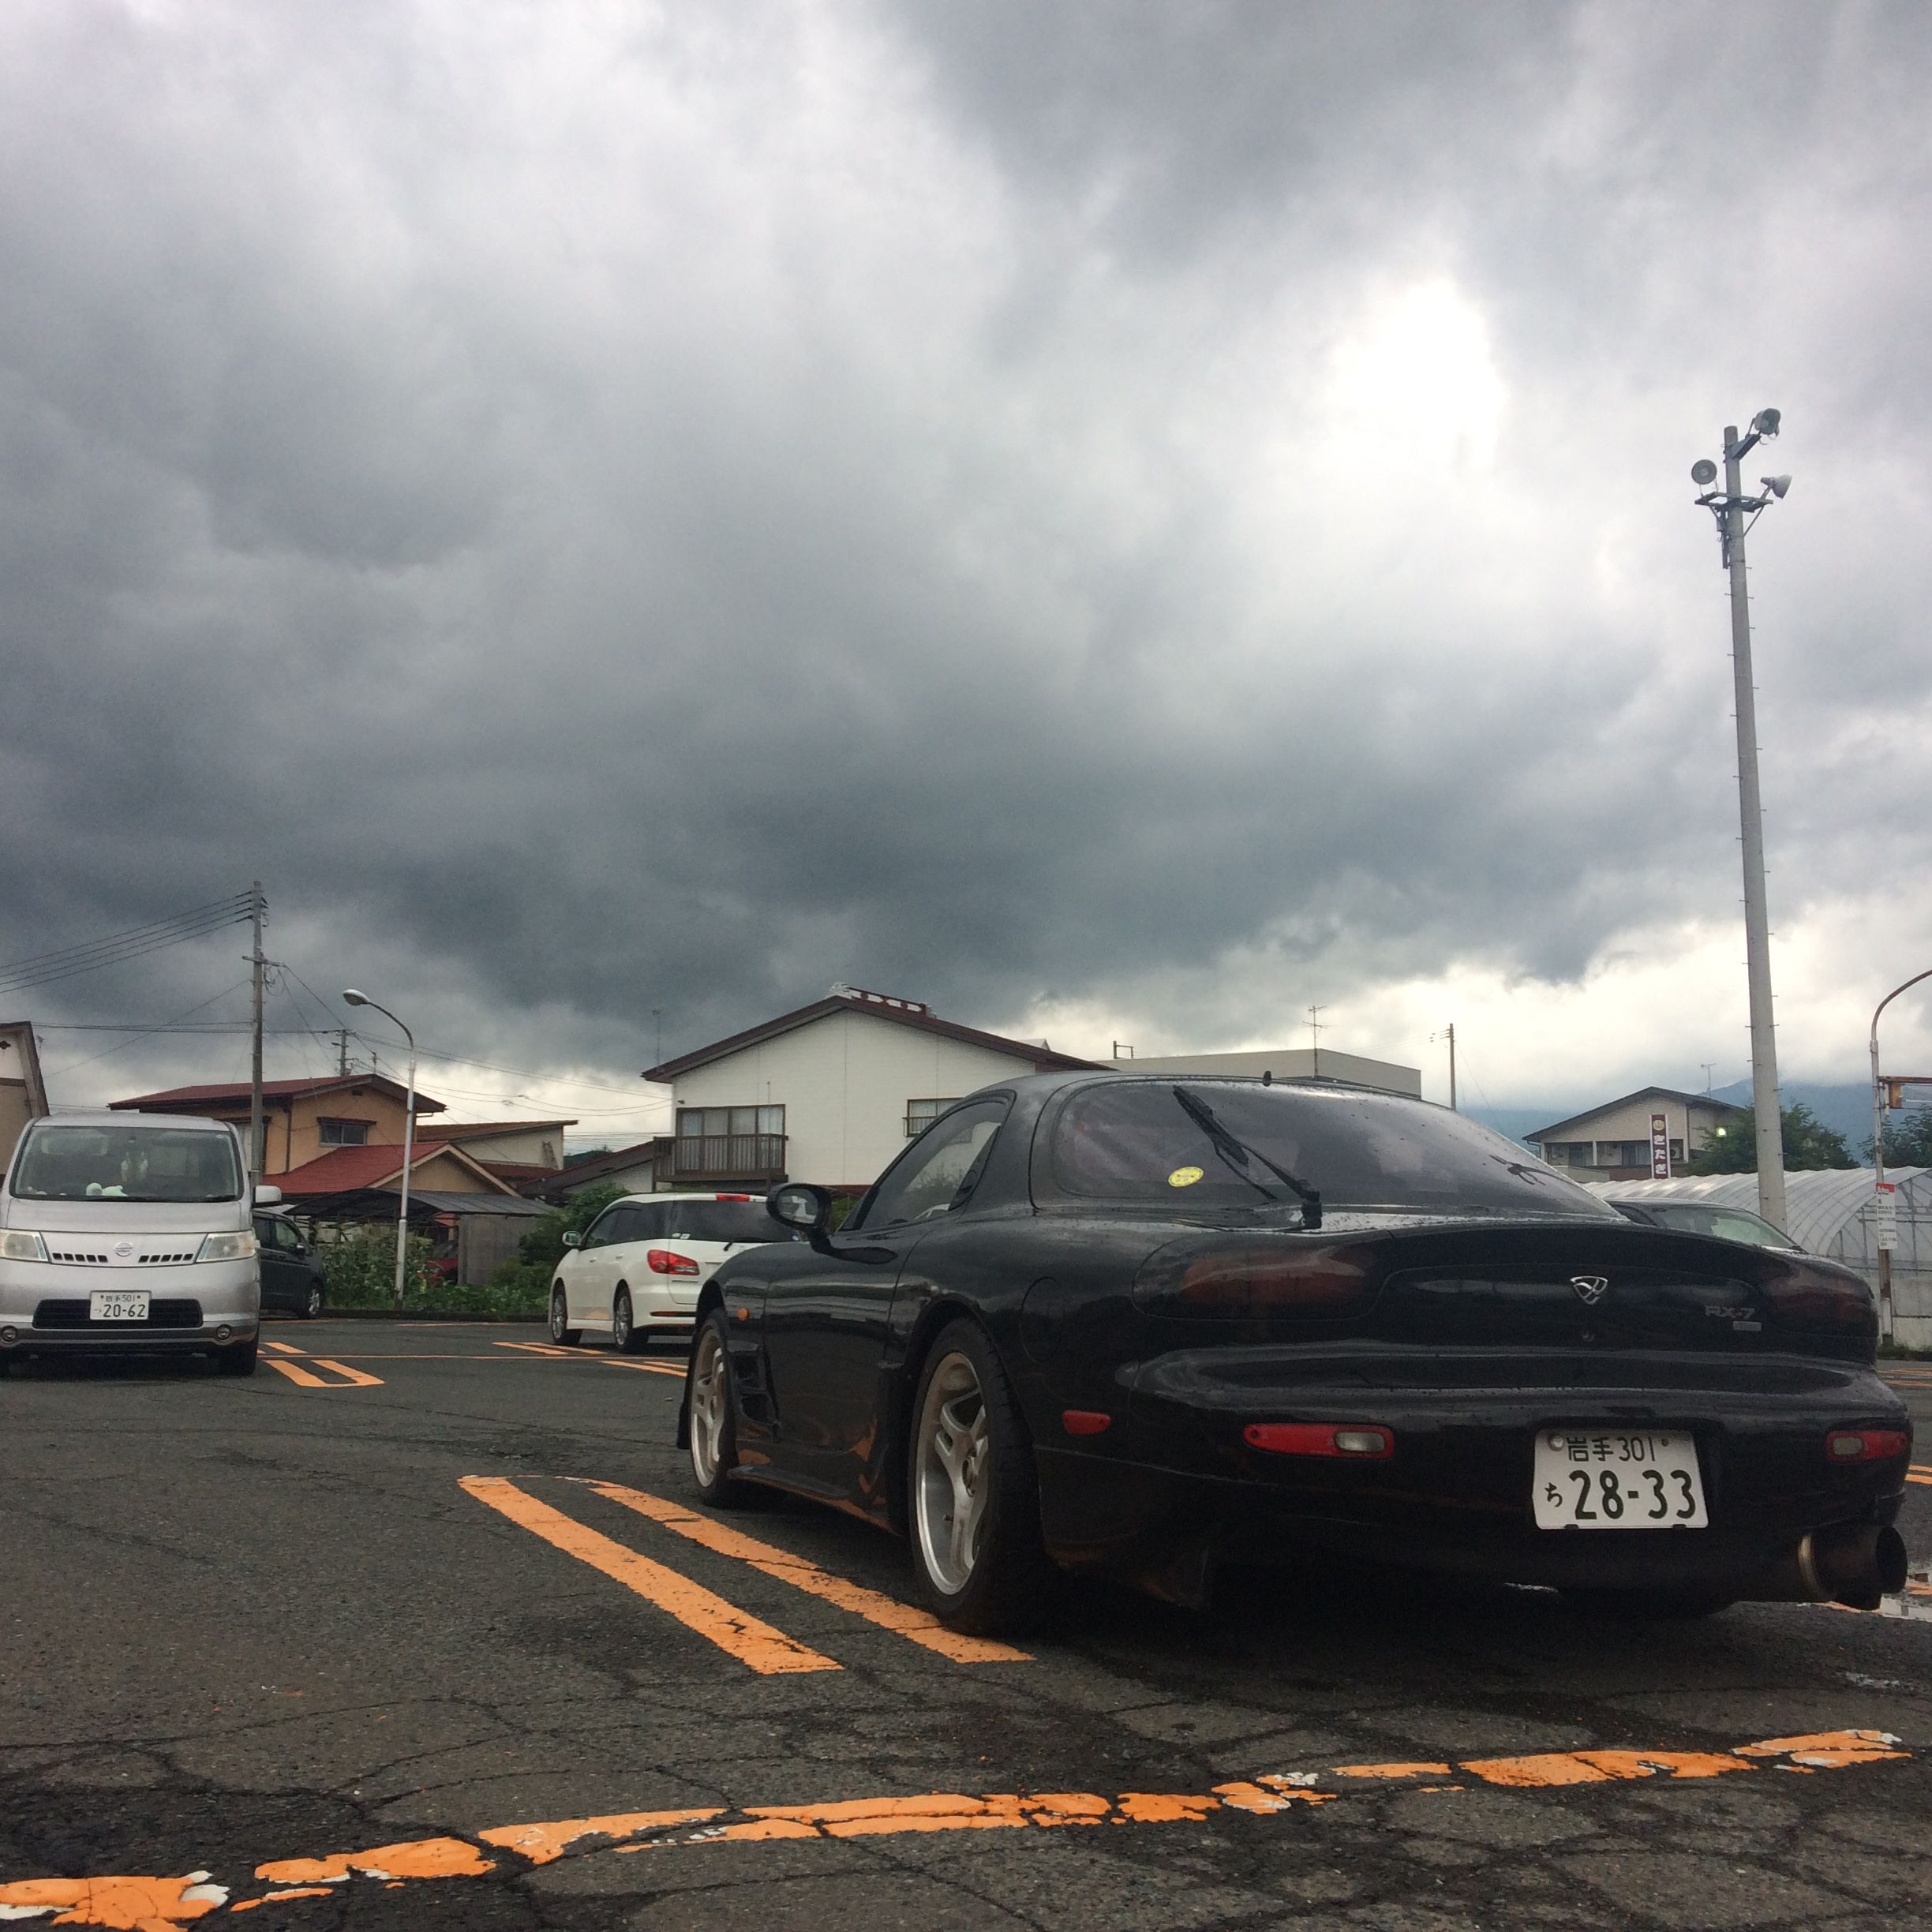 A black Mazda RX-7 sports car in a parking lot under dark grey clouds.